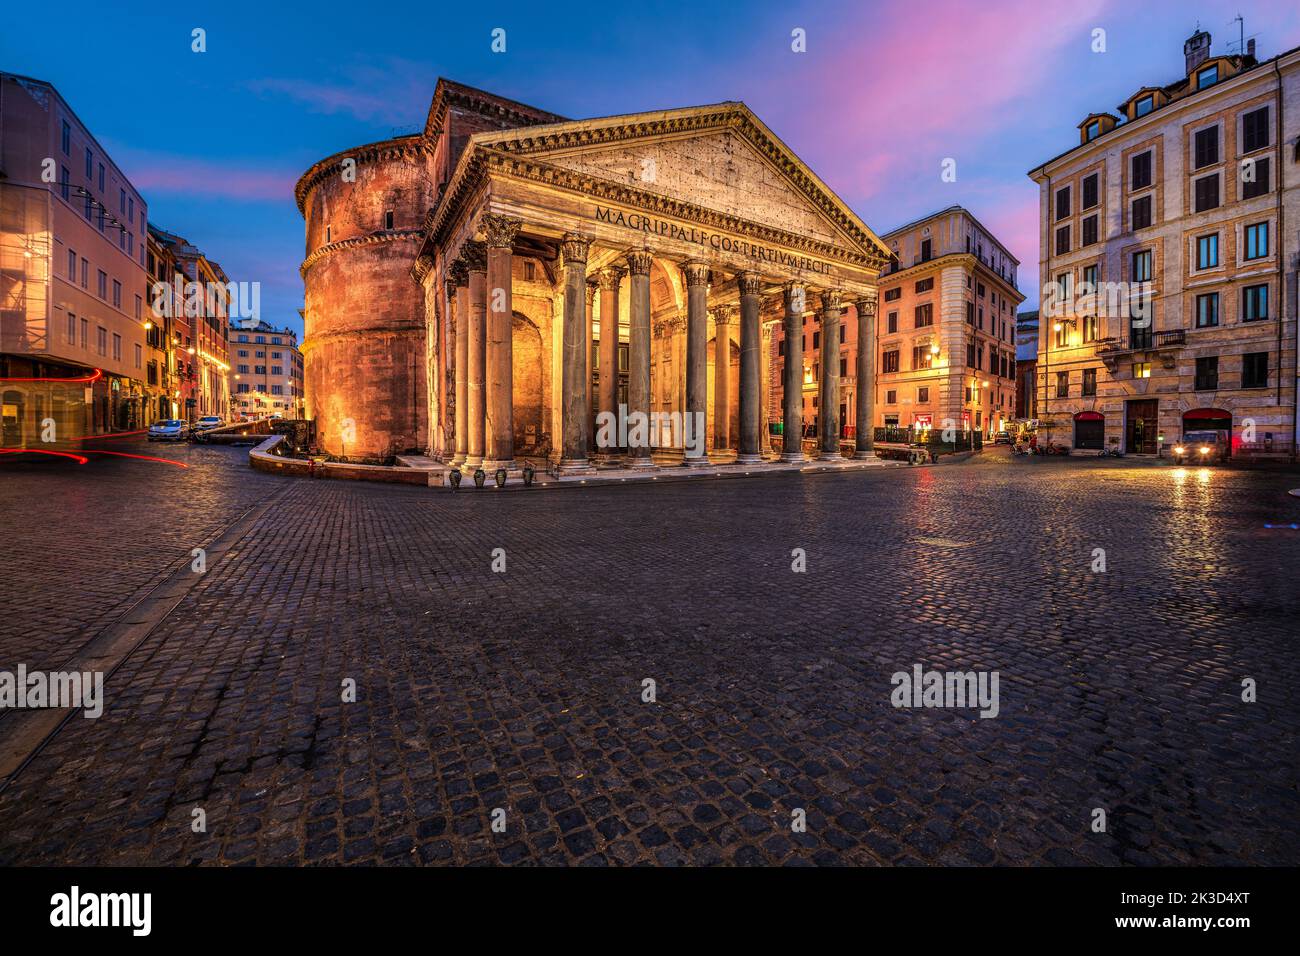 Roma, Italia al Pantheon, antico tempio romano del 2nd secolo. Foto Stock